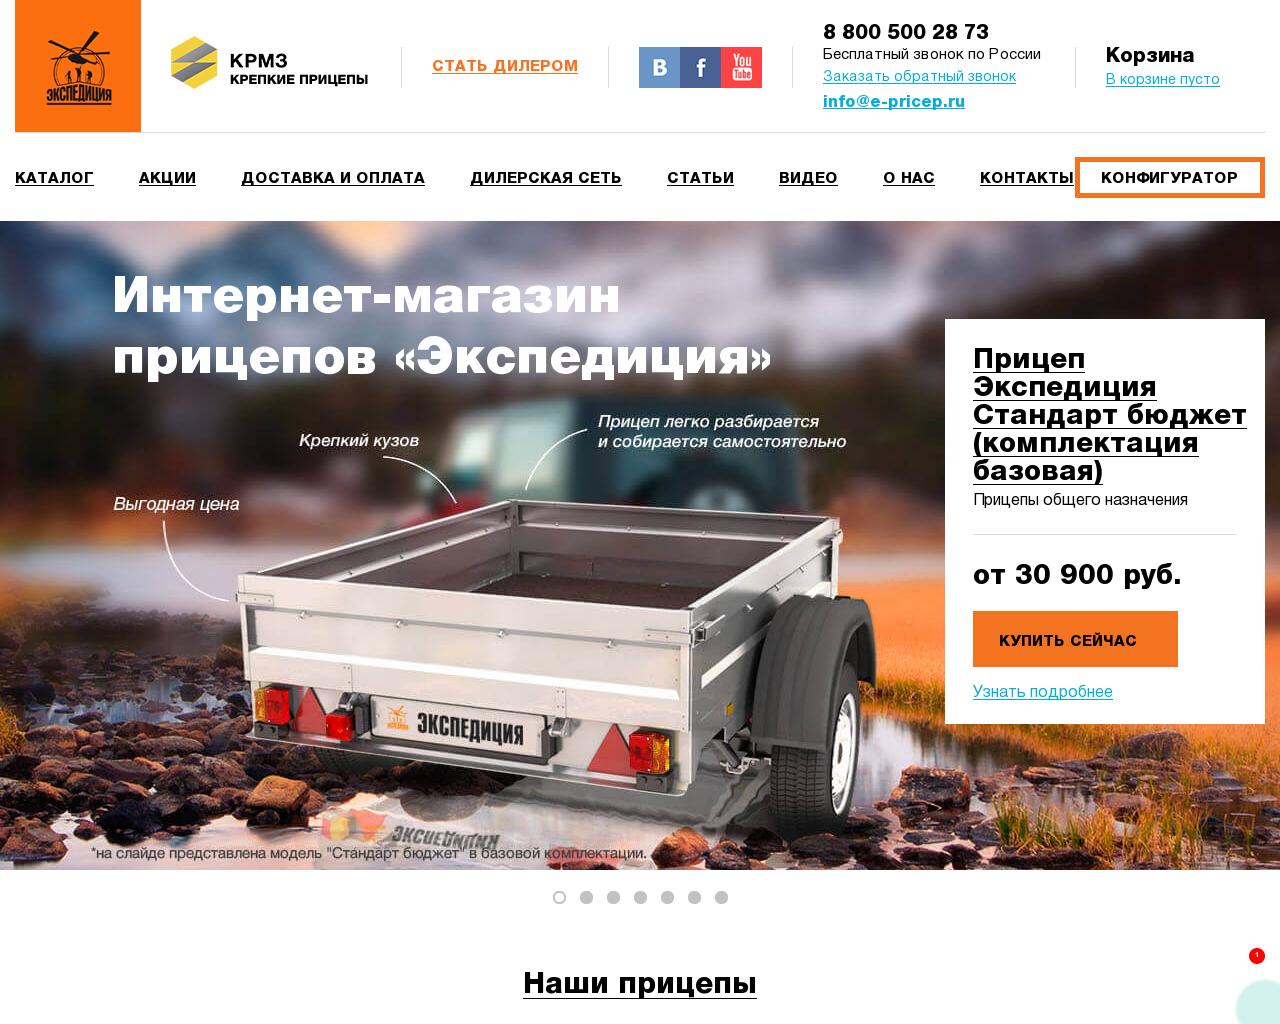 Изображение сайта expedition-pricep.ru в разрешении 1280x1024